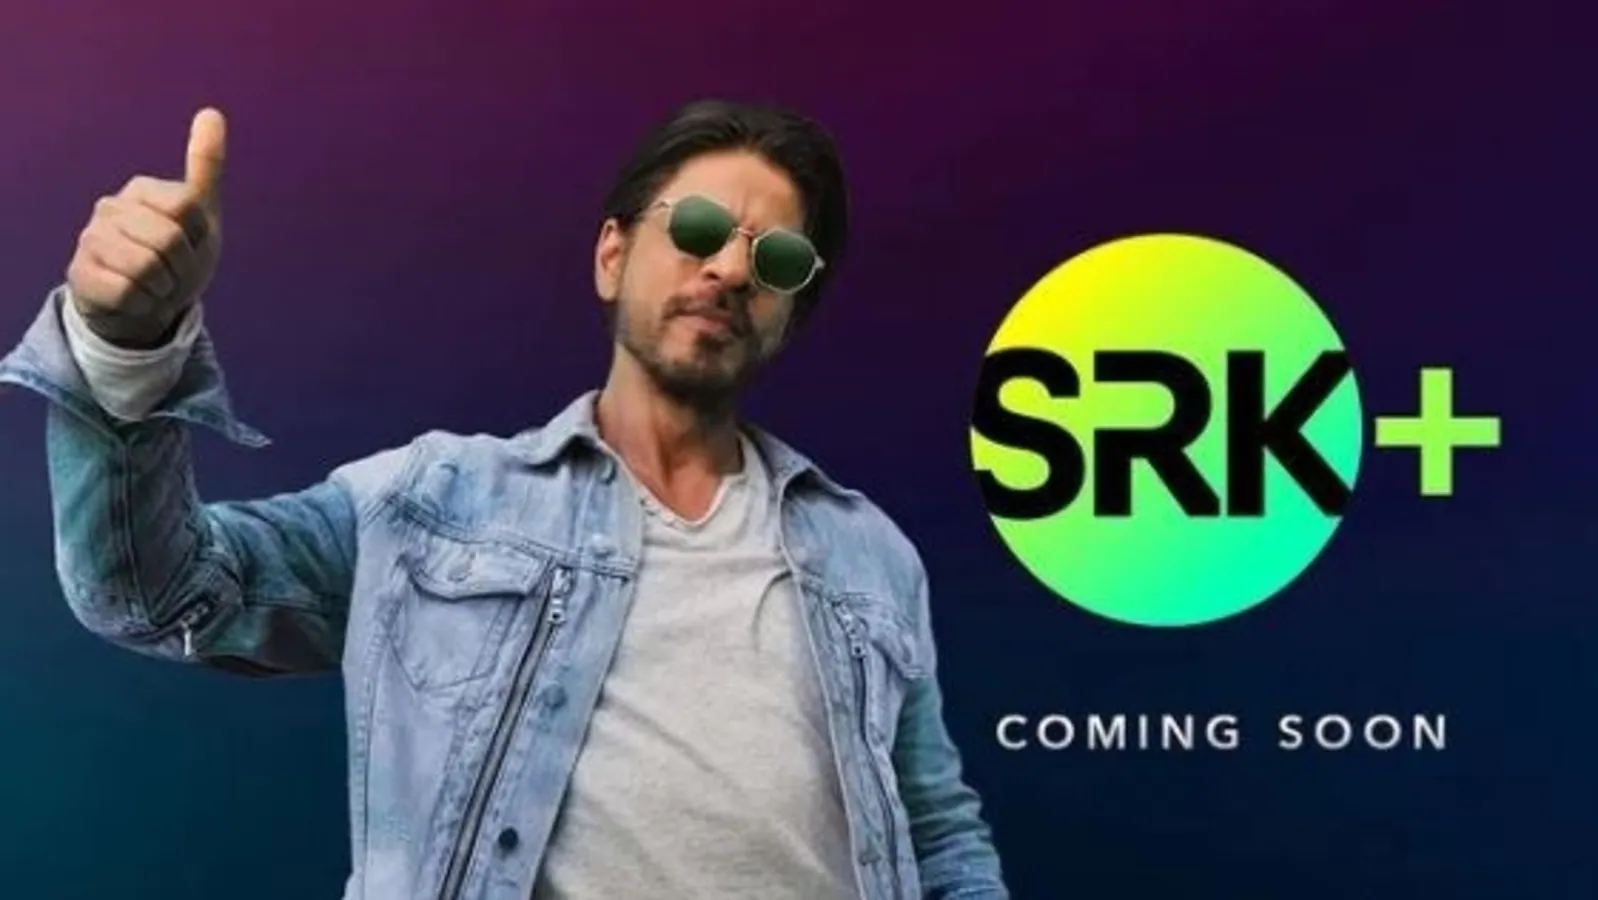 Shah Rukh Khan teases new OTT venture but Salman Khan leaks details, fans say: ‘Suspense hi khatam kar diya bhai’